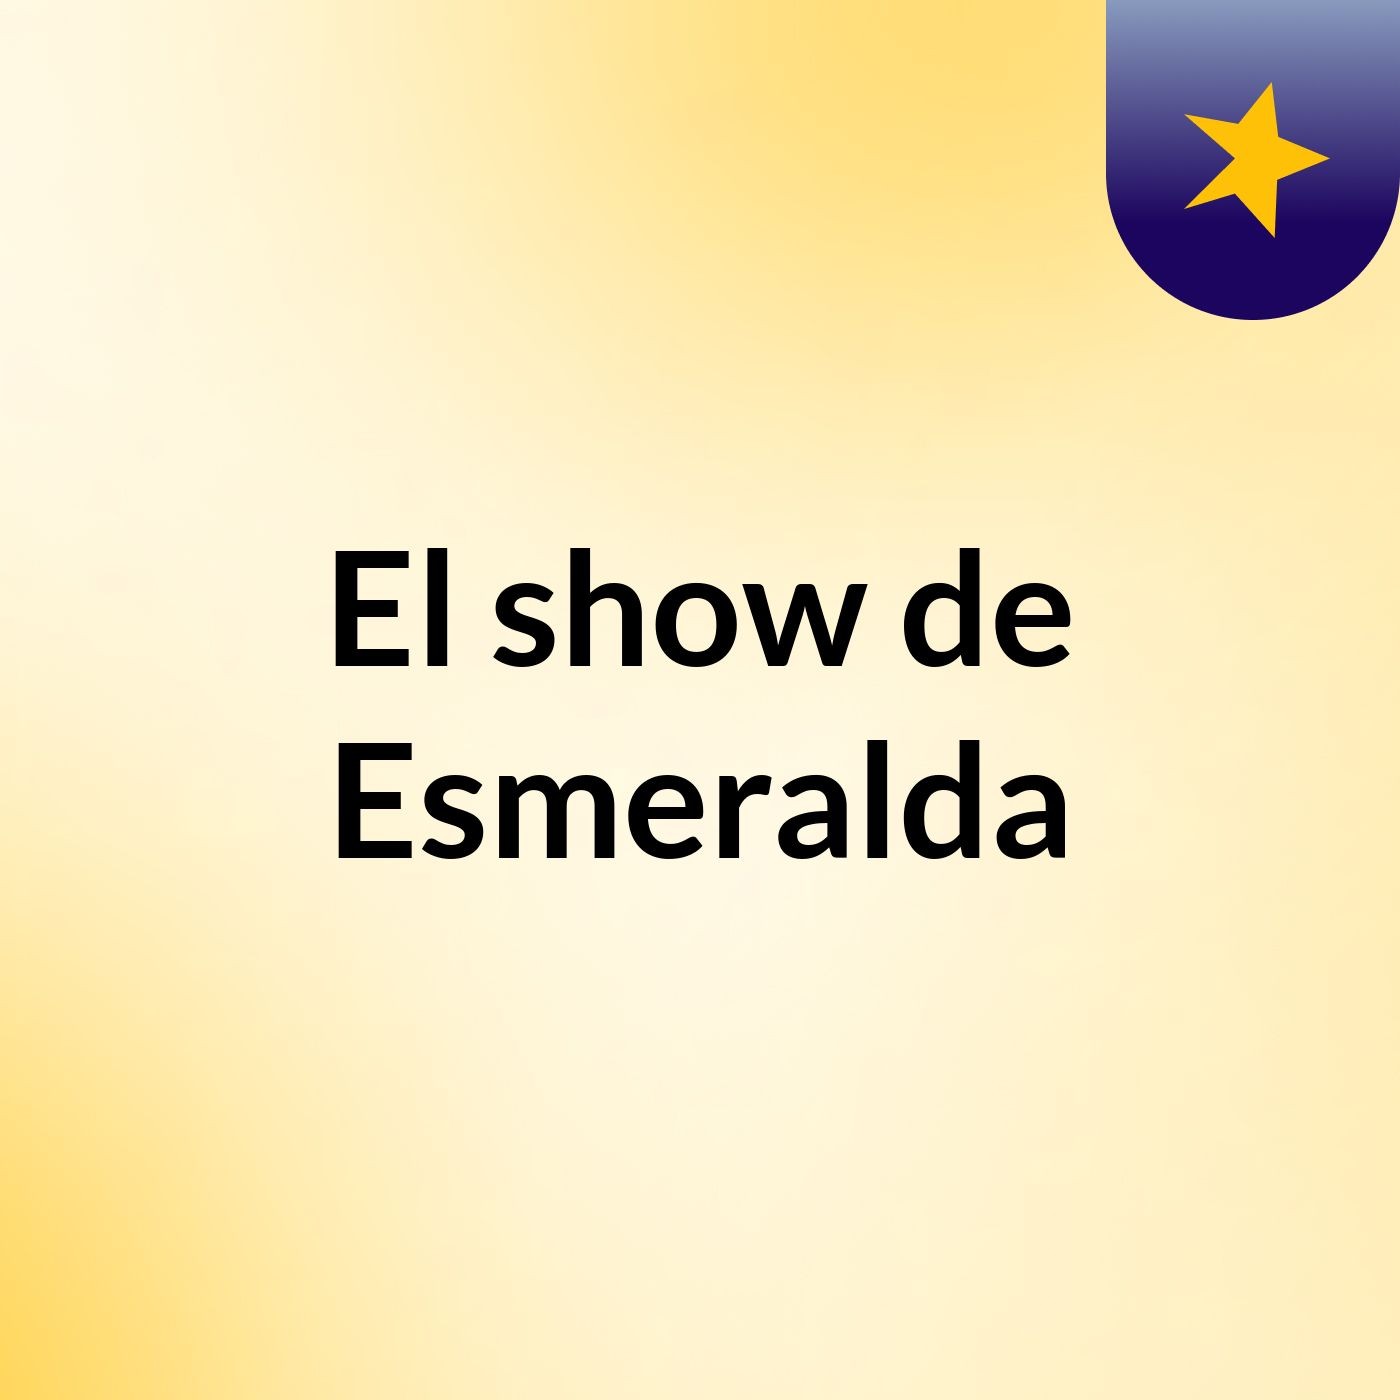 El show de Esmeralda